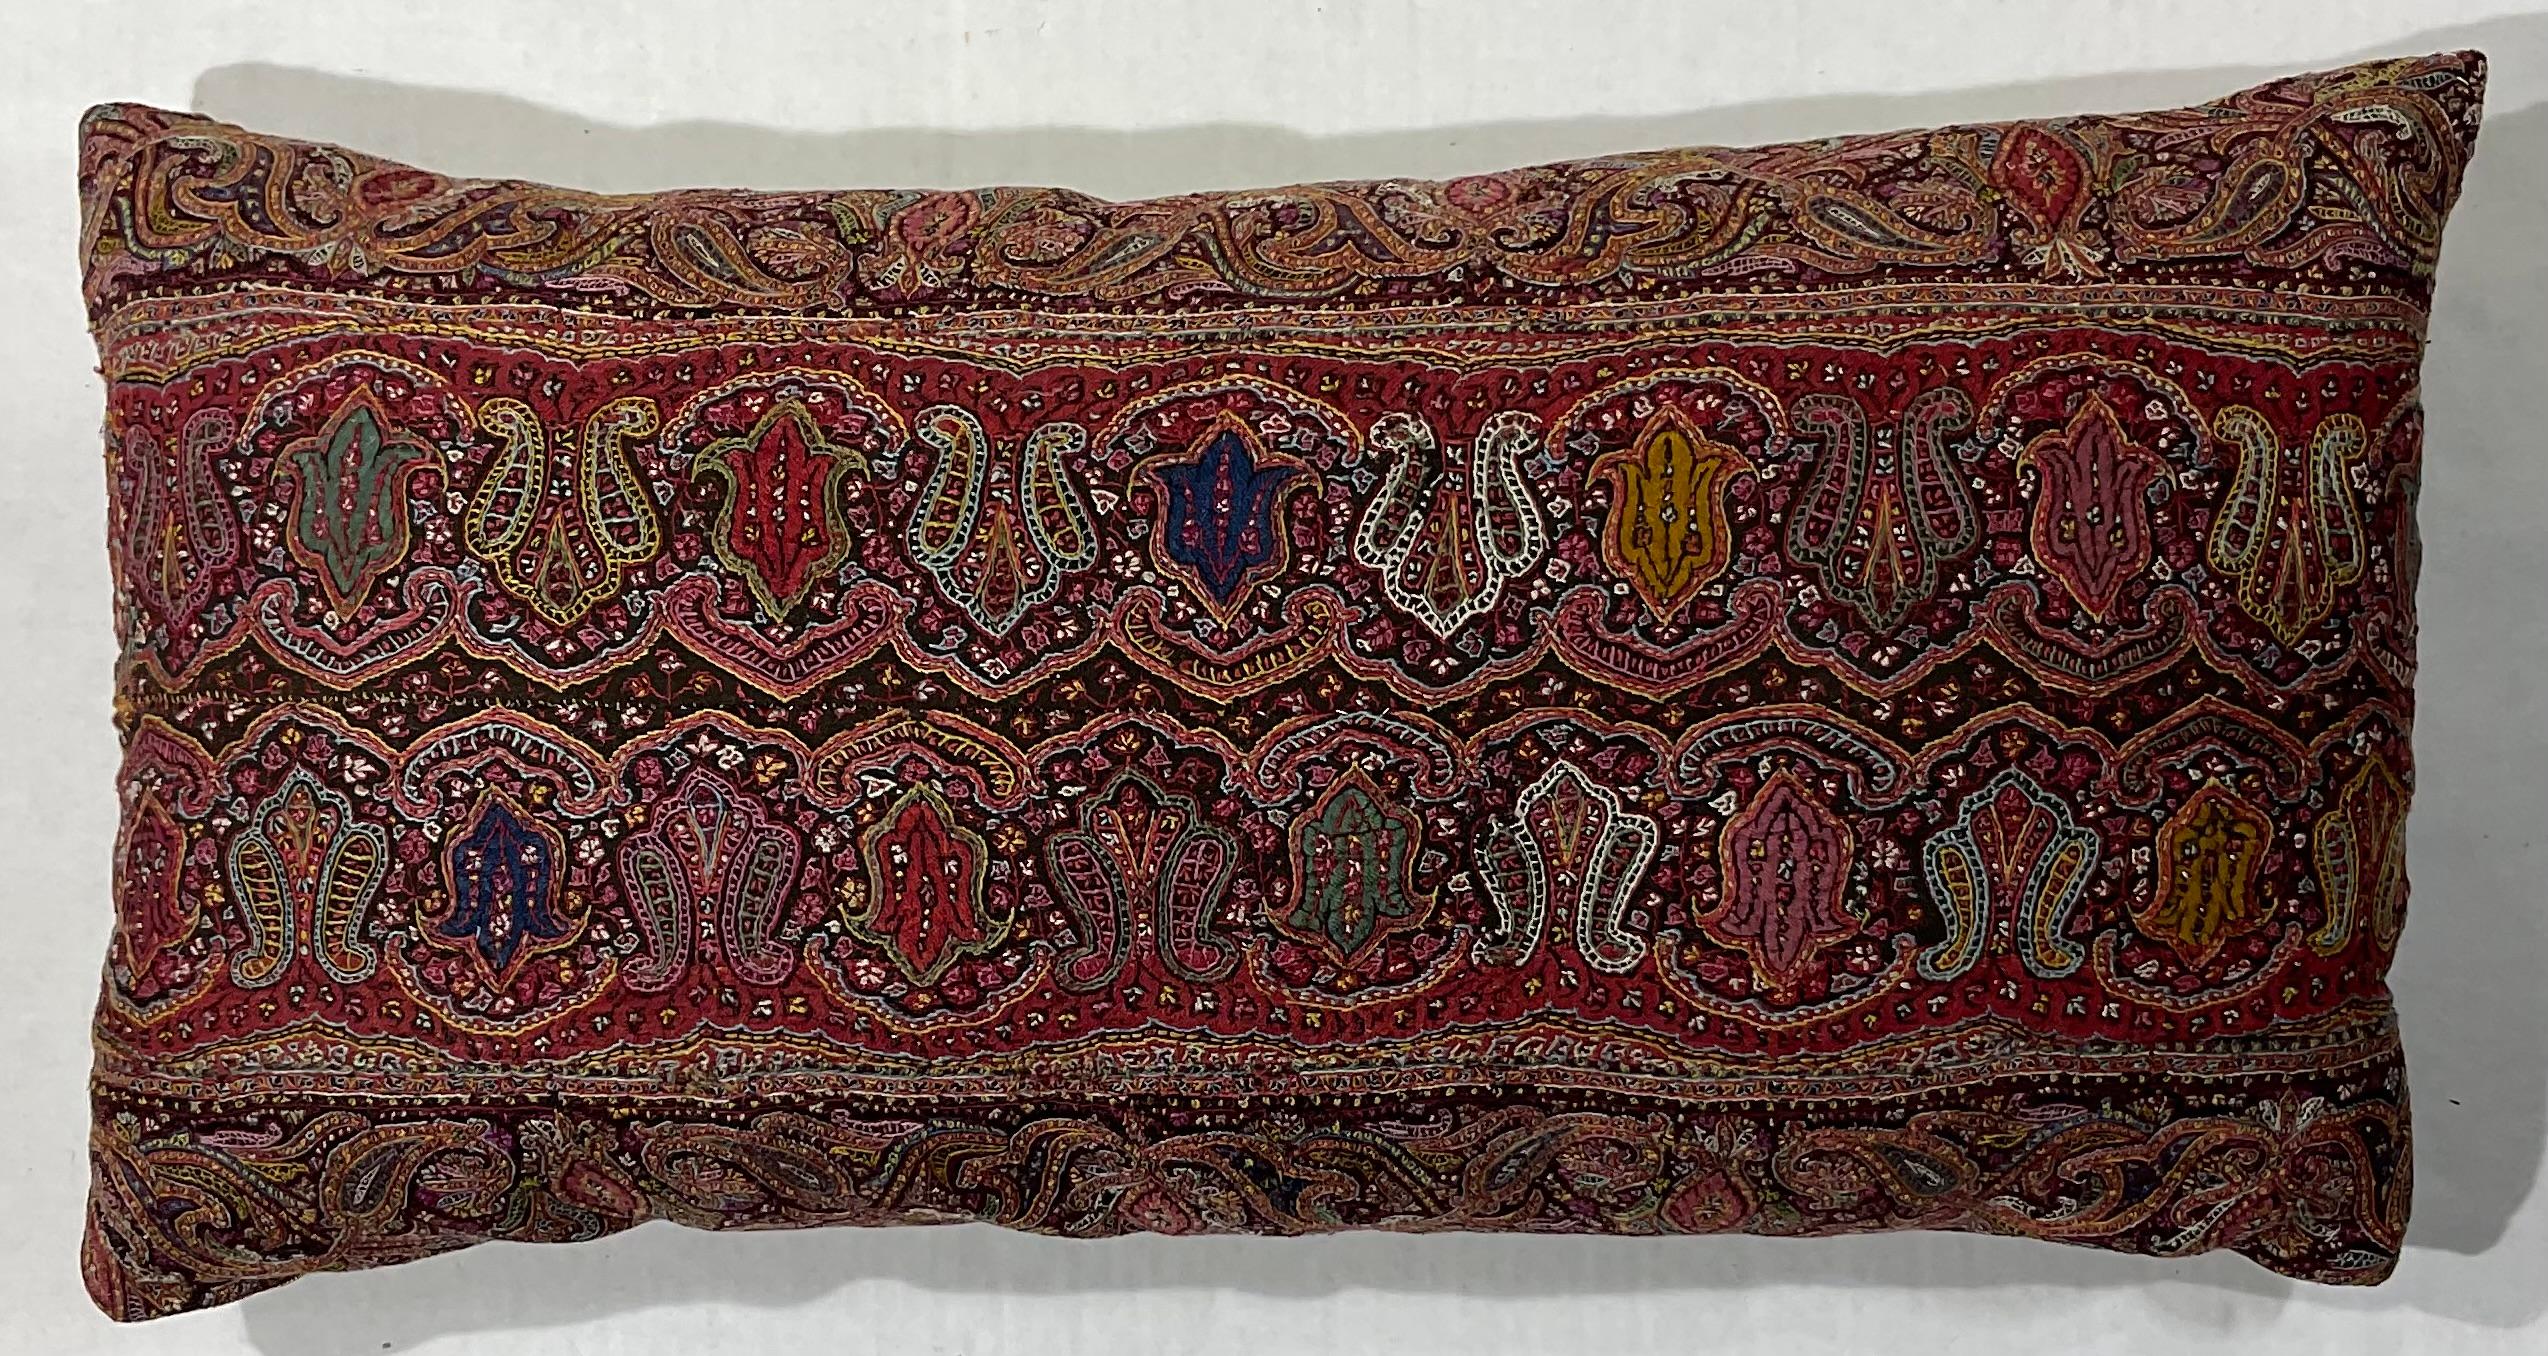 Wunderschönes, handgesticktes Kissen aus einem antiken persischen Stoff der Provinz Kermonsha.
Sehr detaillierte, lebhafte Blumenmotive.
Frische Einlage, feine Baumwollunterlage.